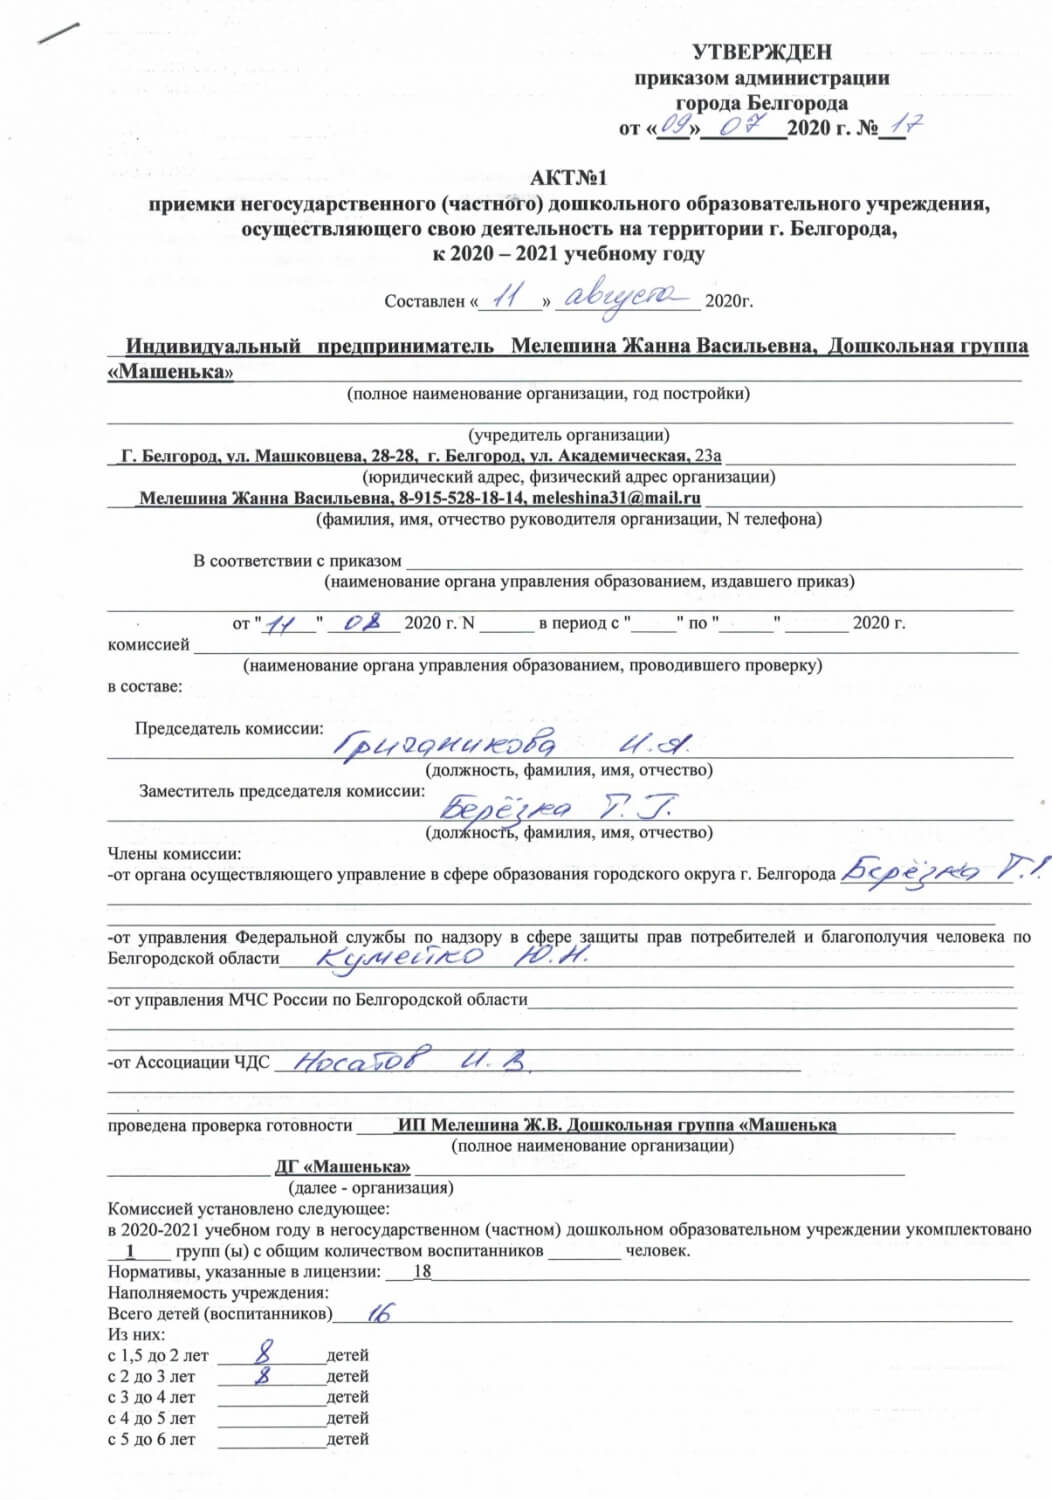 Акт приемки негосударственного дошкольного образовательного учреждения, осуществляющего свою деятельность на территории г. Белгорода, к 2020-2021 учебному году